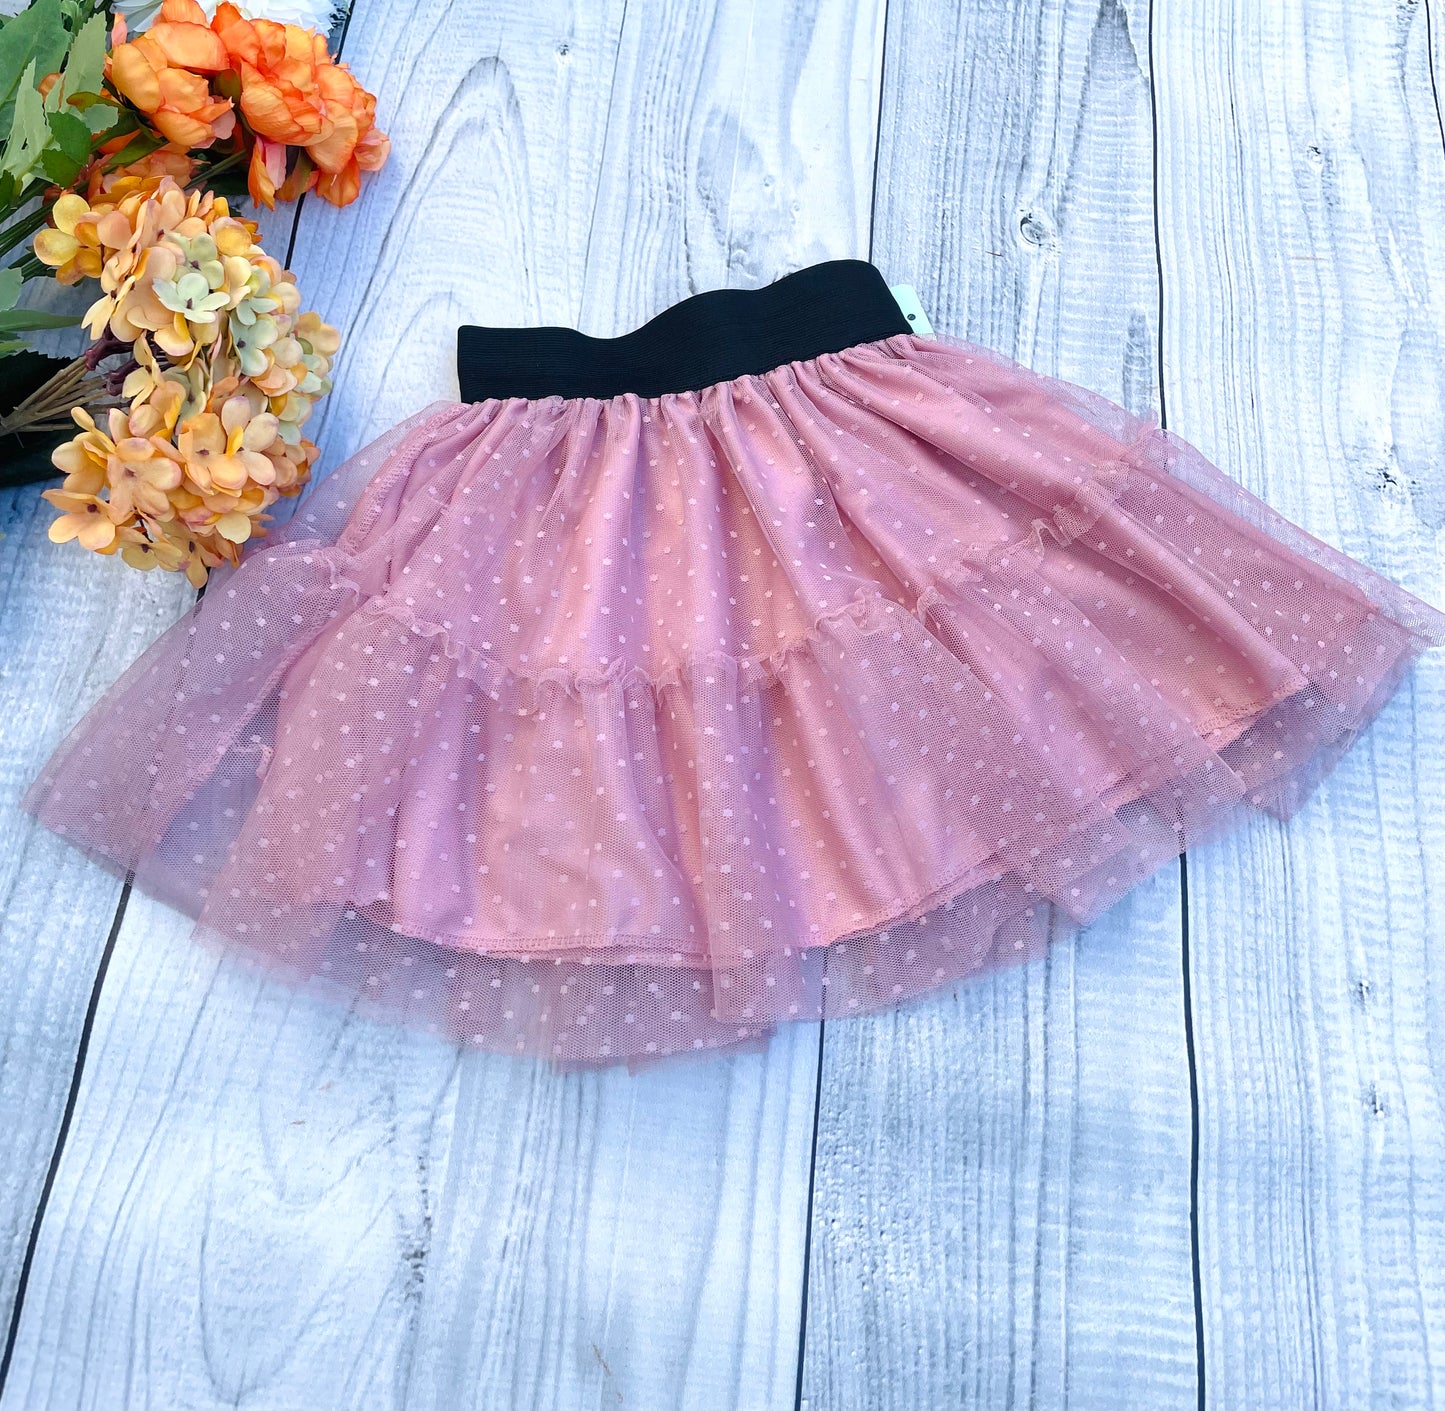 Light pink skirt